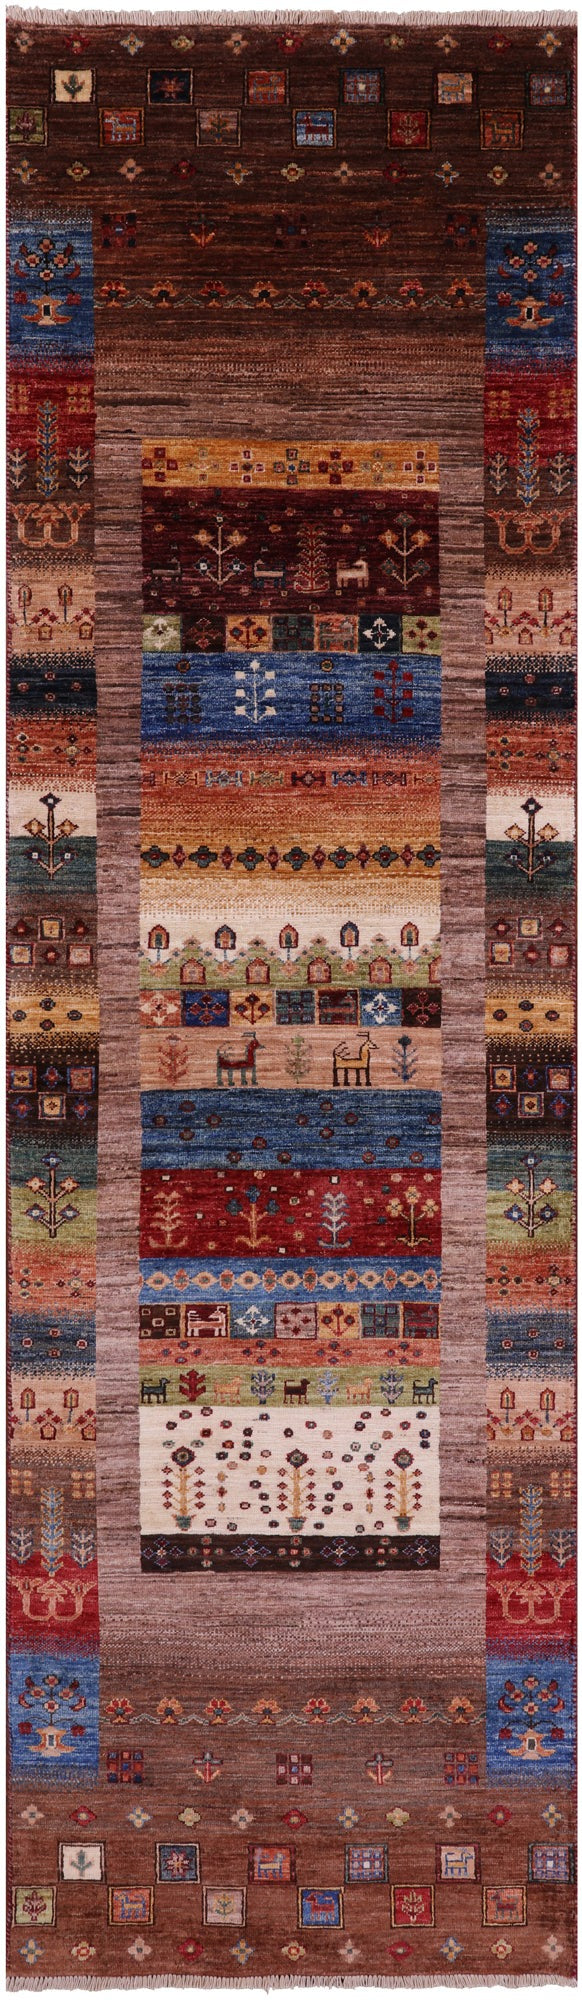 Tribal Persian Gabbeh Handmade Wool Runner Rug Golden Nile